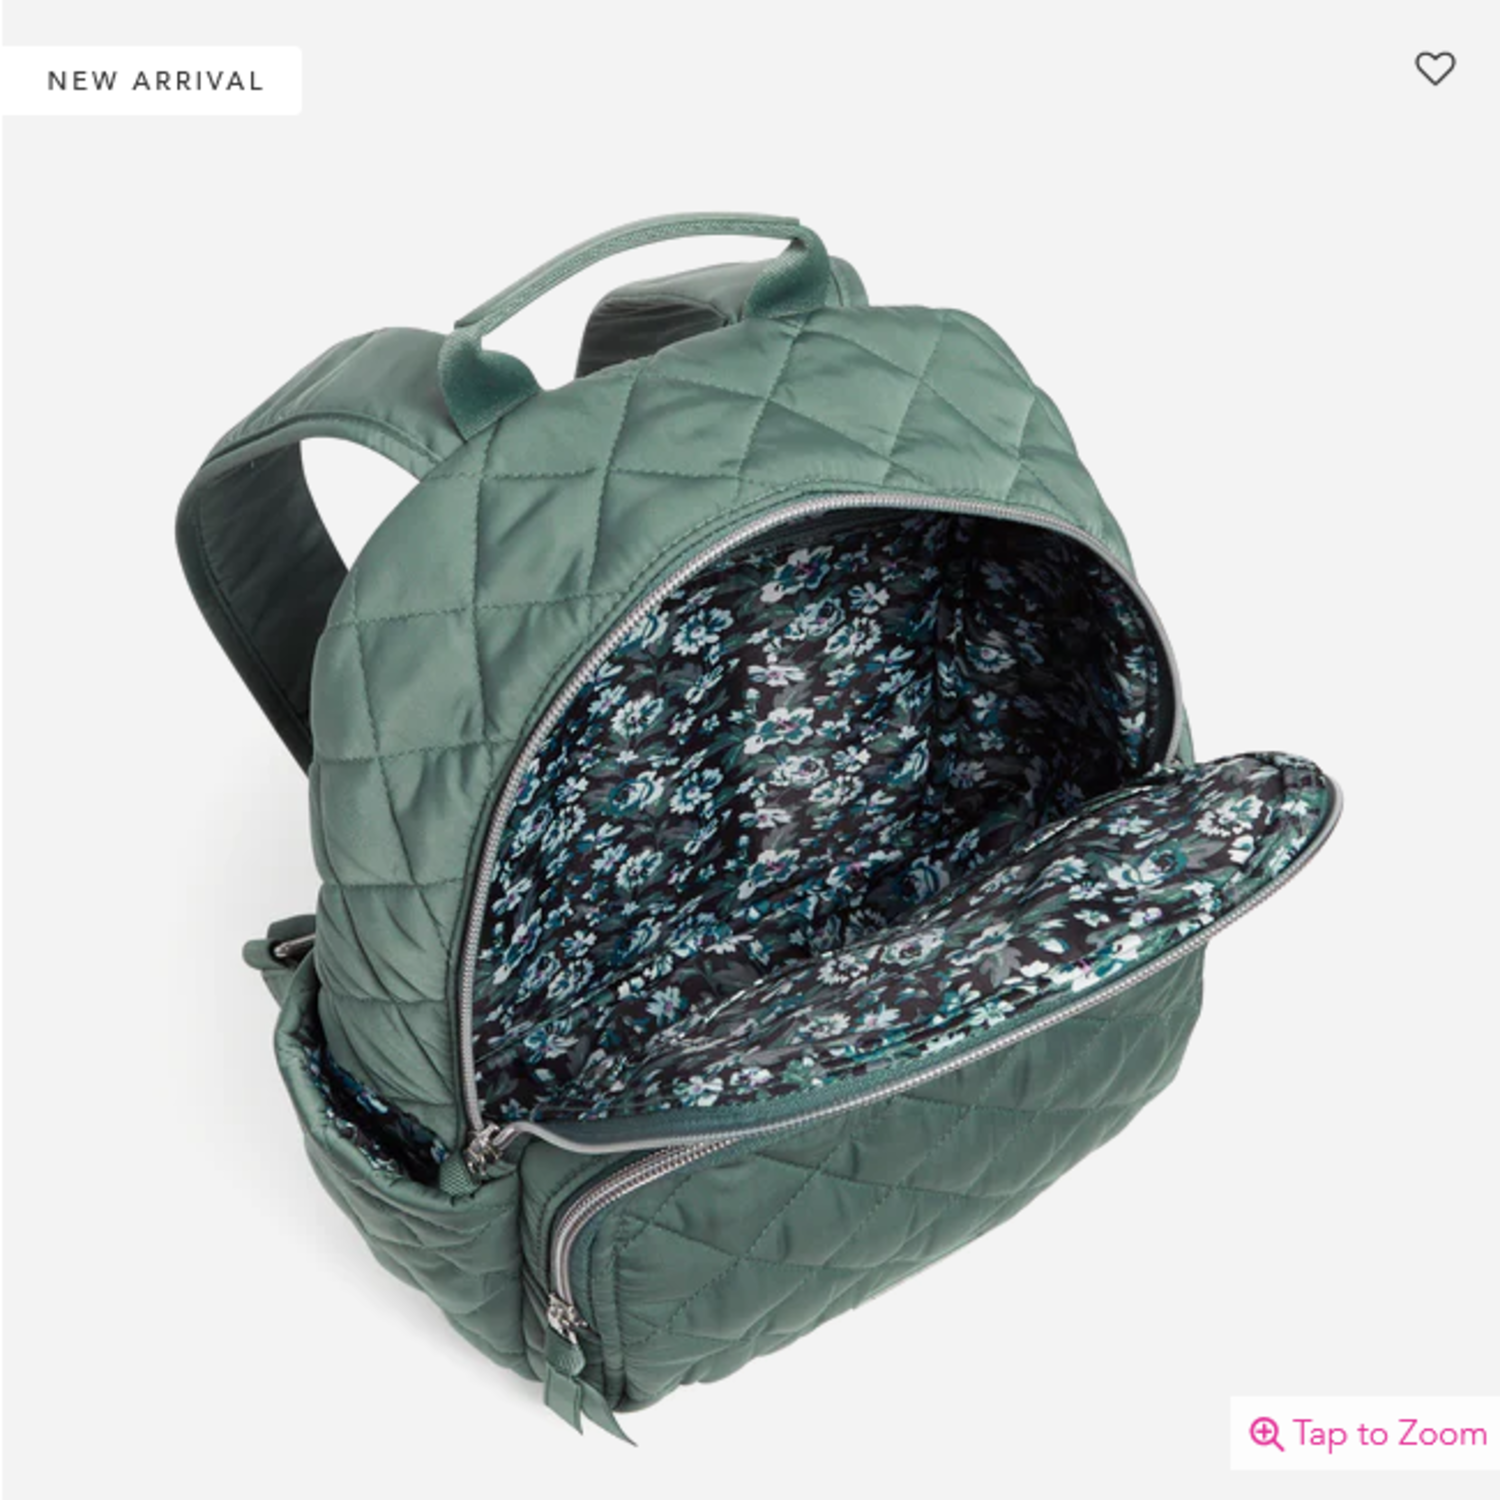 Green Leaf Backpack